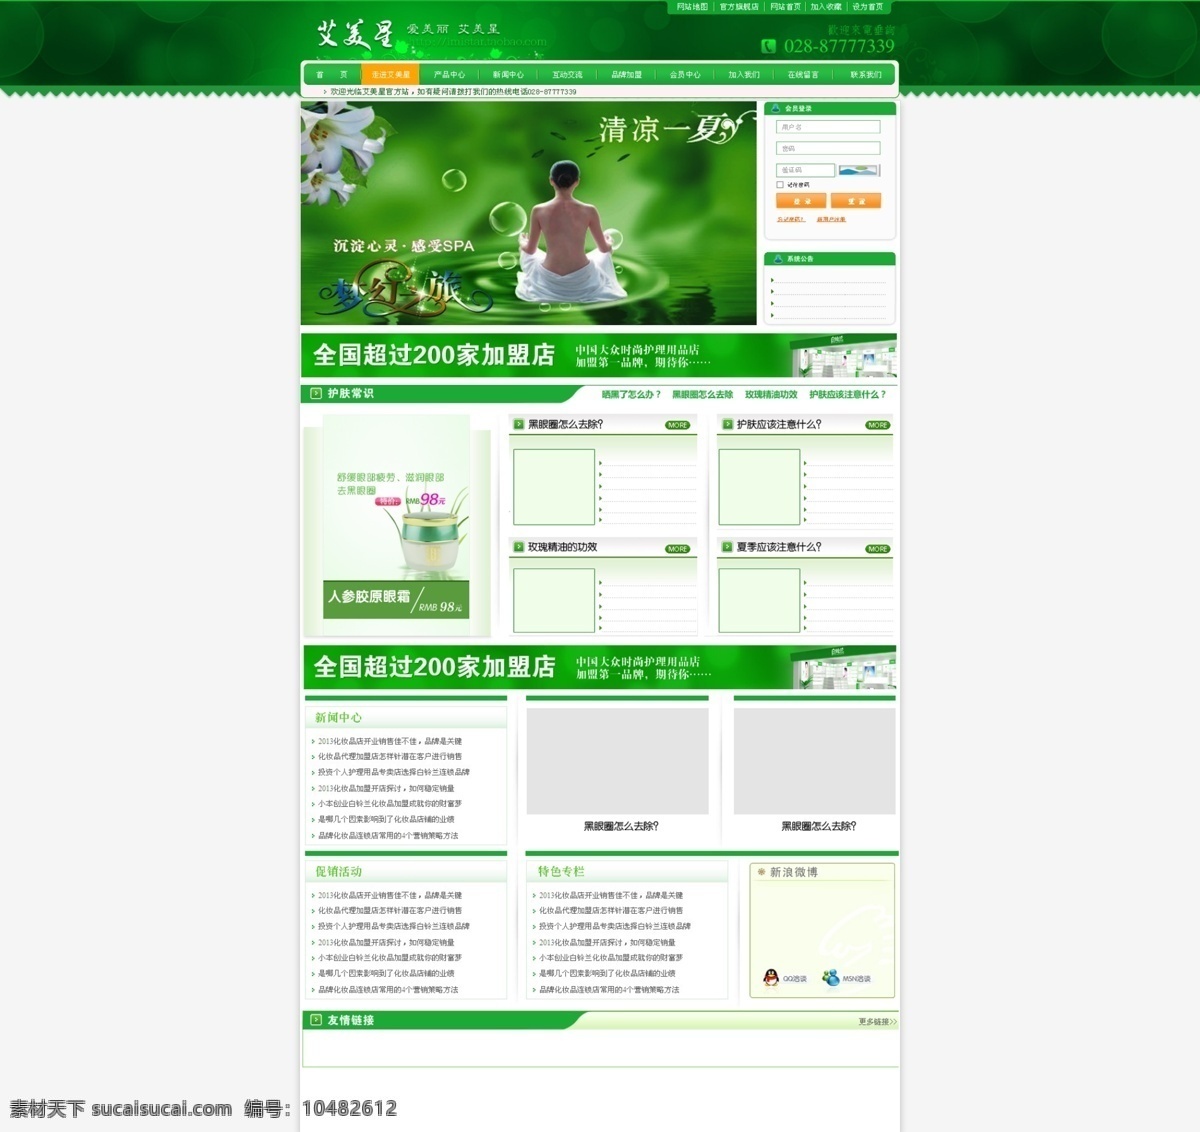 化妆品网页 绿色网站设计 美女 气泡 水圈 网页模板 网页设计 网站设计 化妆品 网页素材 中文模板 源文件